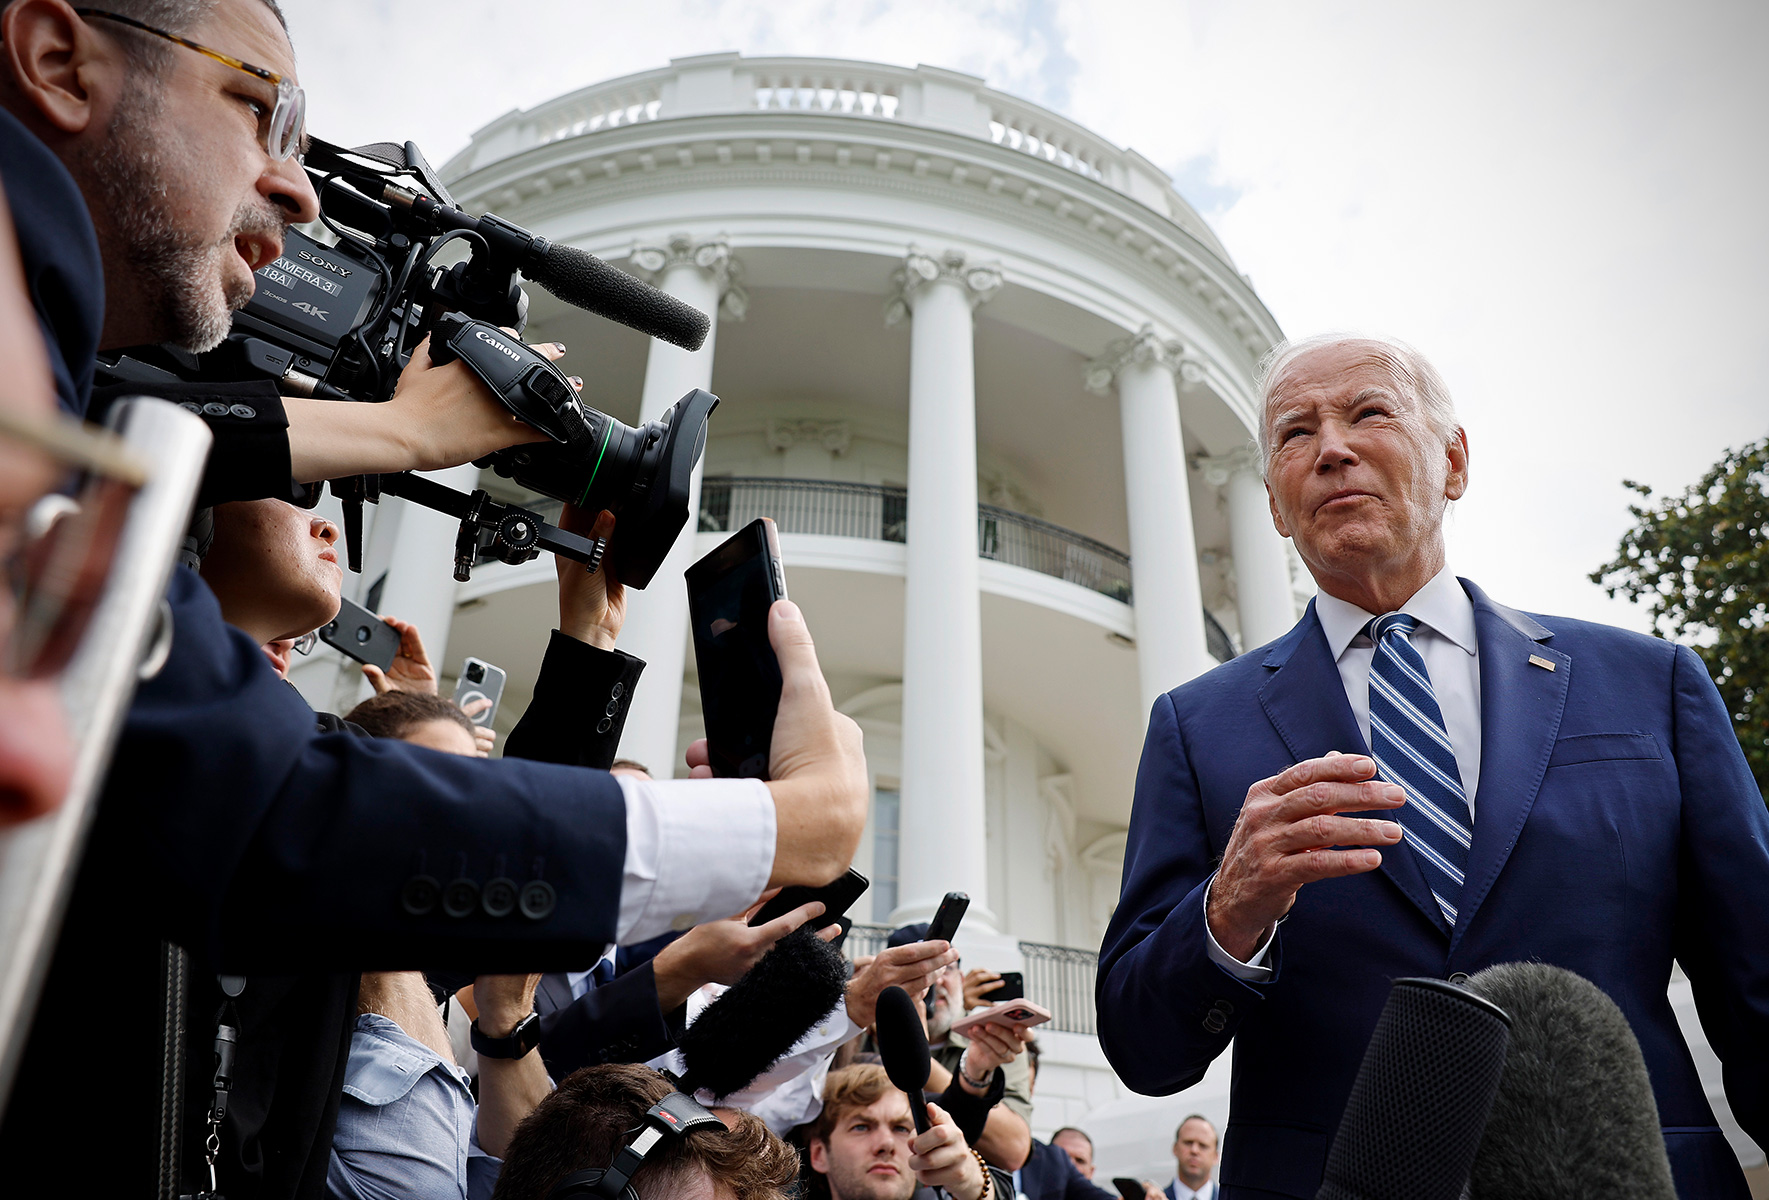 Biden mocked over gaffe about Putin’s war in Iraq